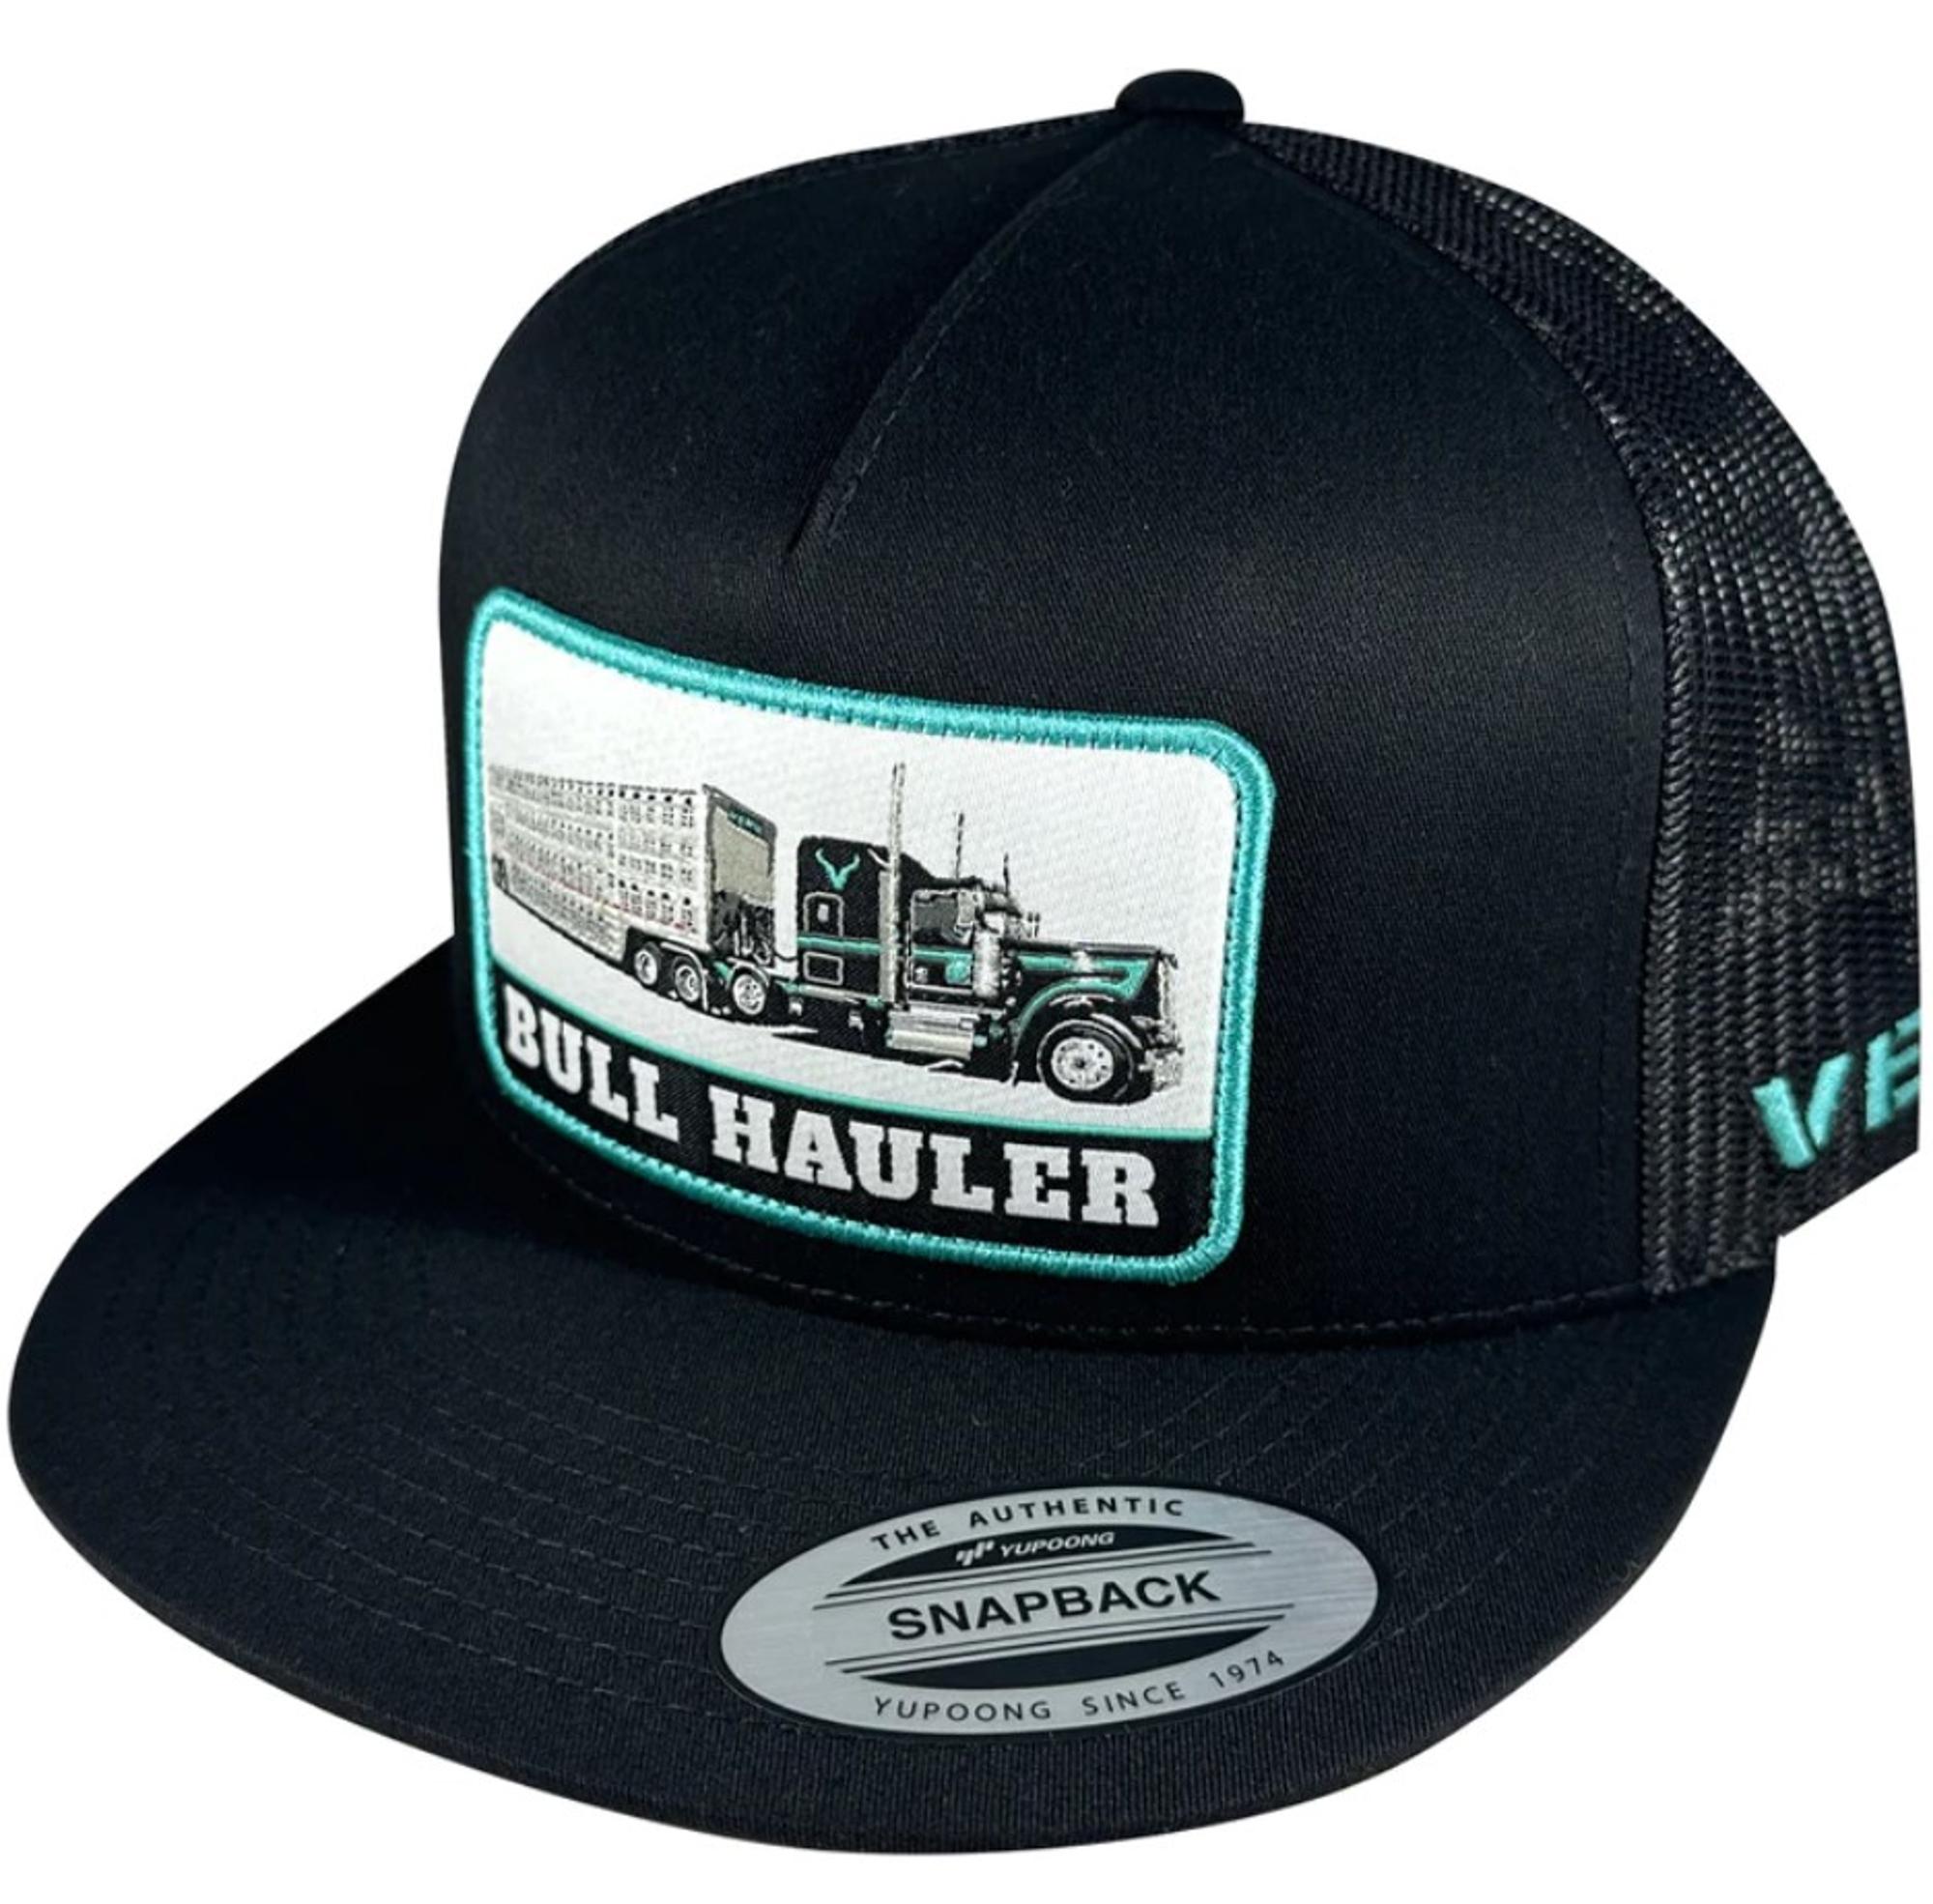 Bull Hauler Trucker Snapback Hat